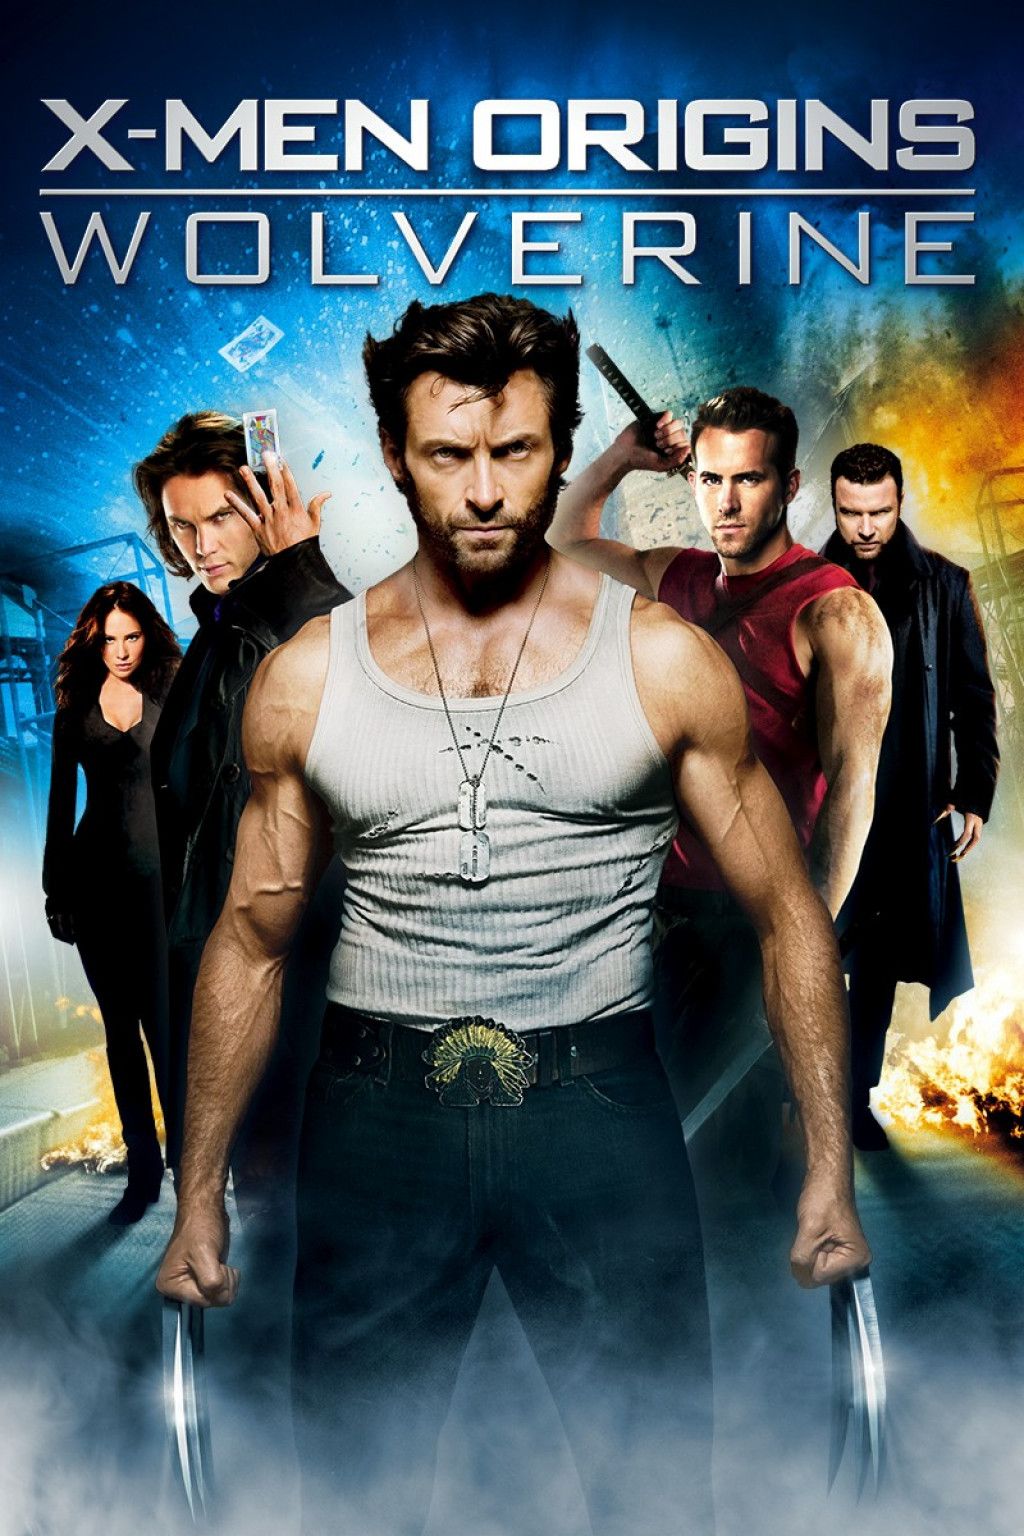 Should I Watch.? 'X Men Origins: Wolverine'